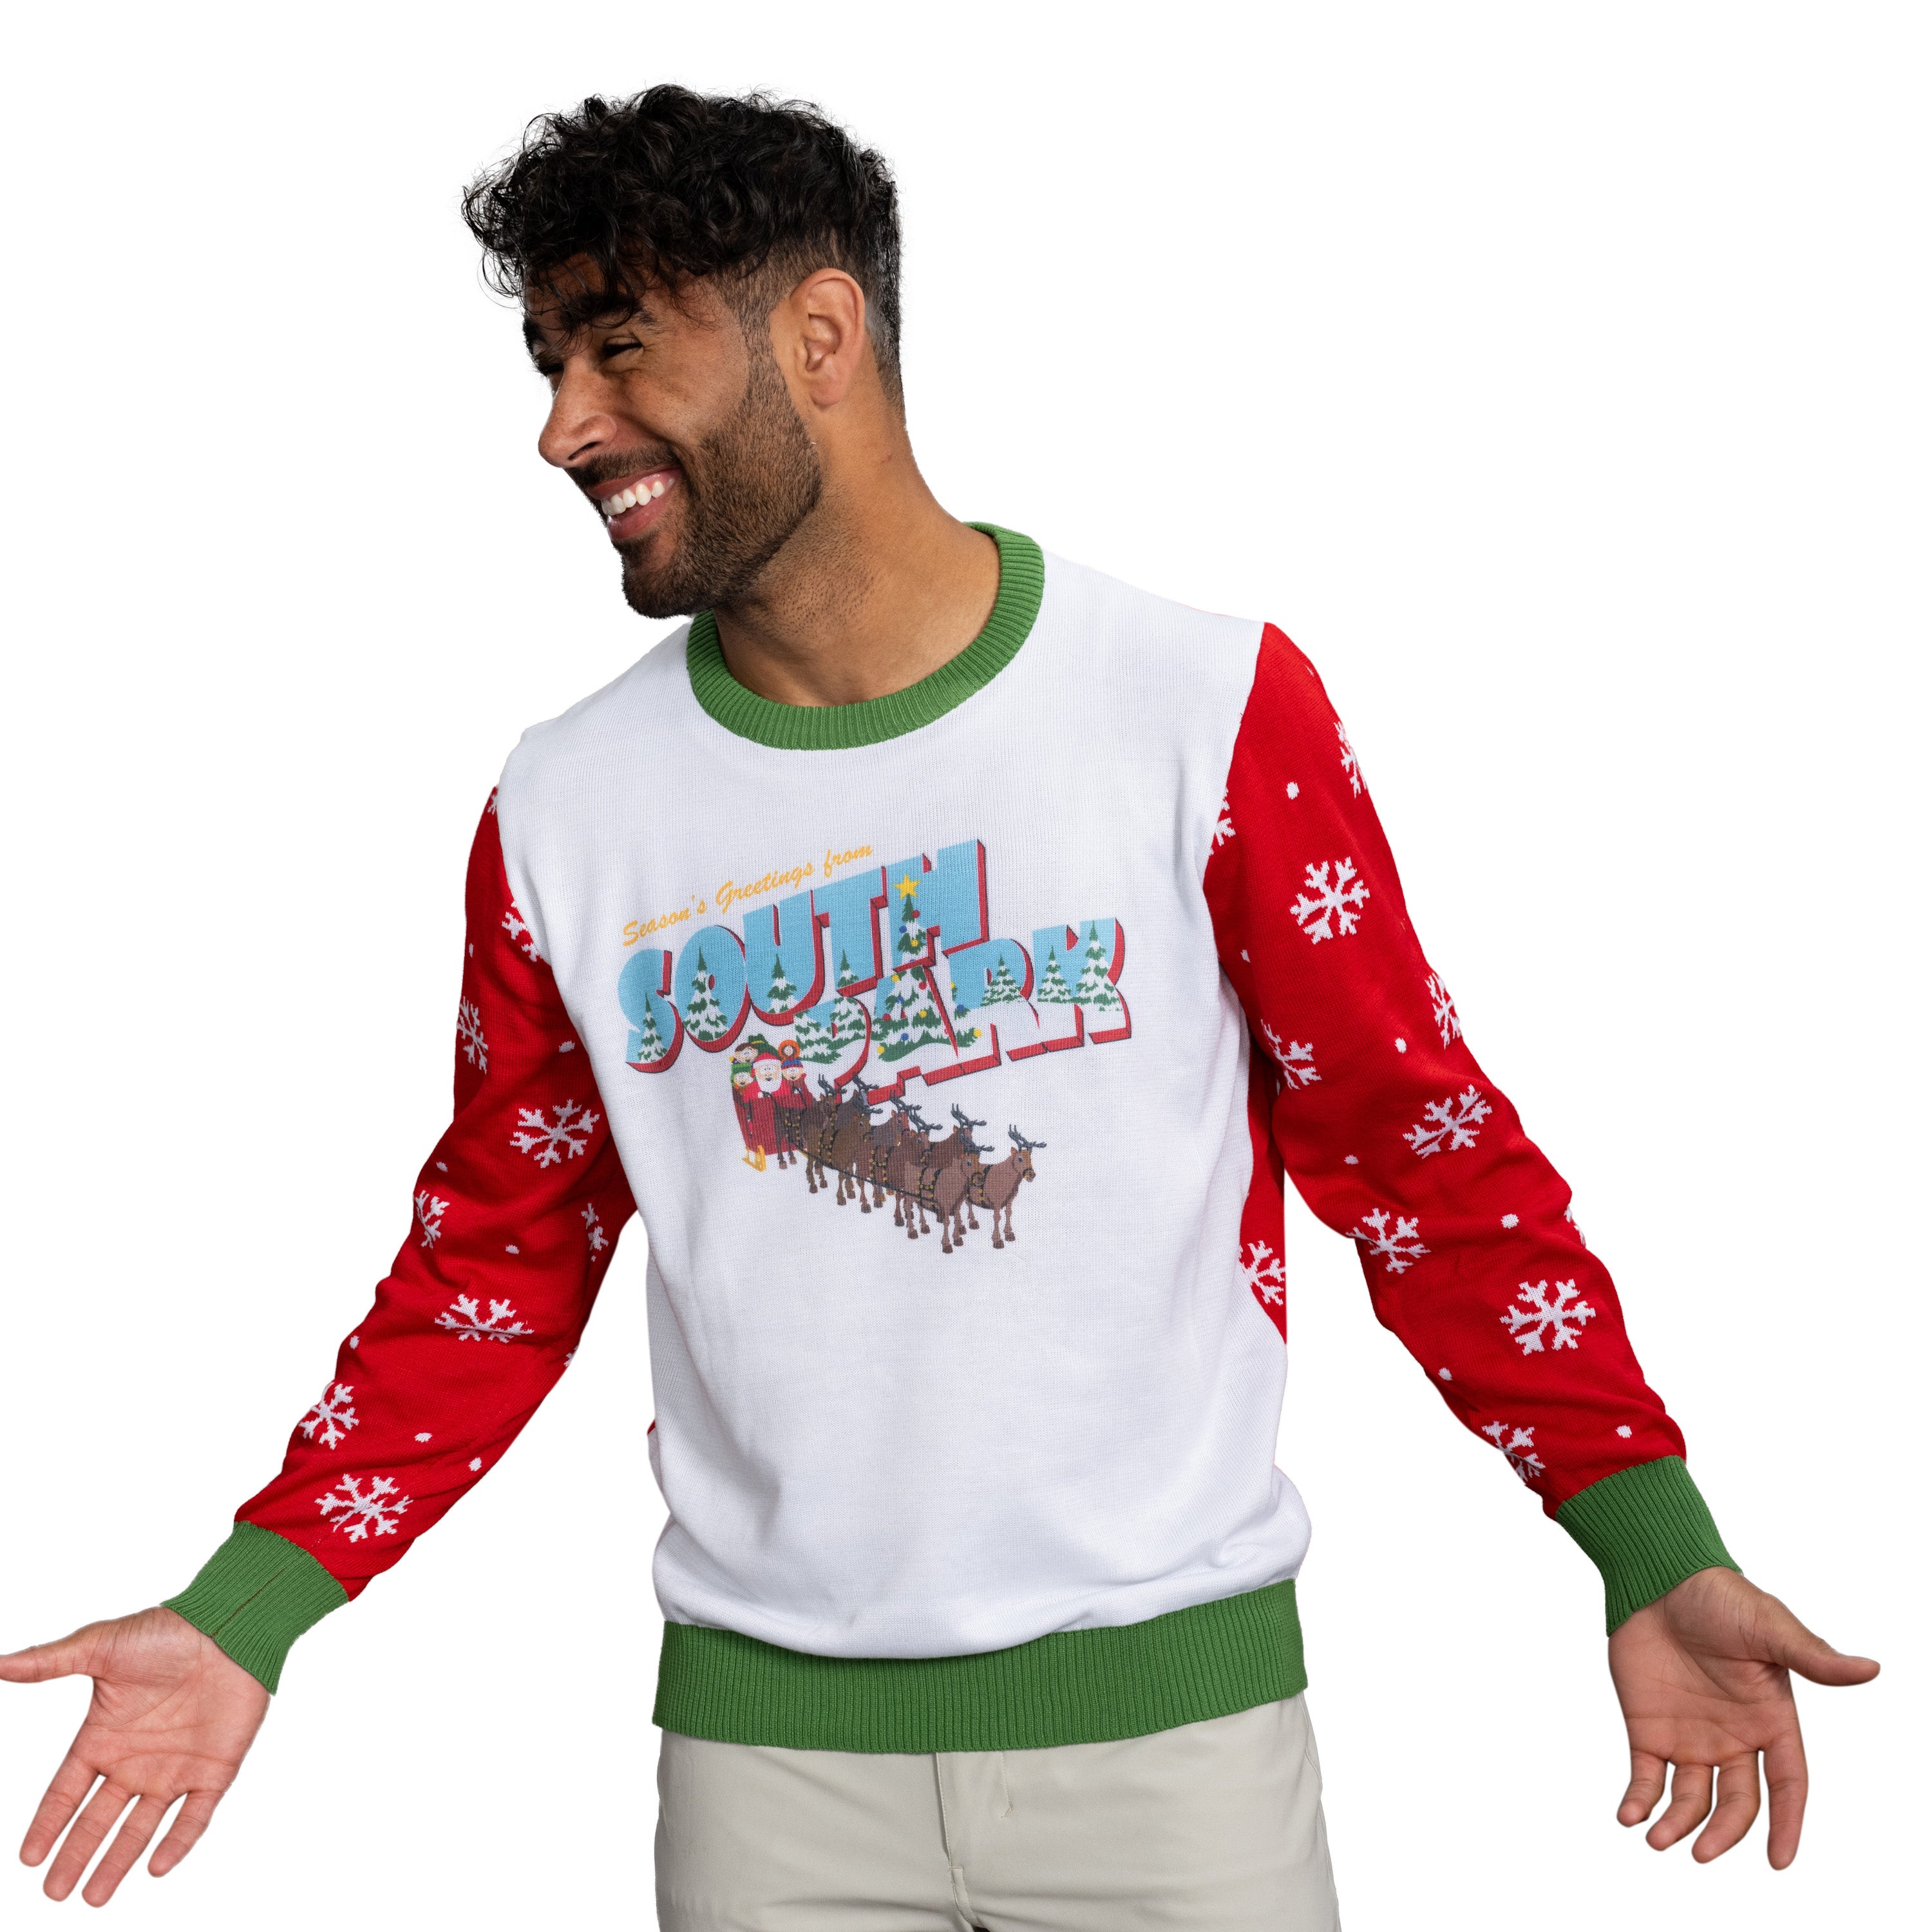 Season's Greetings South Park Christmas Sweater